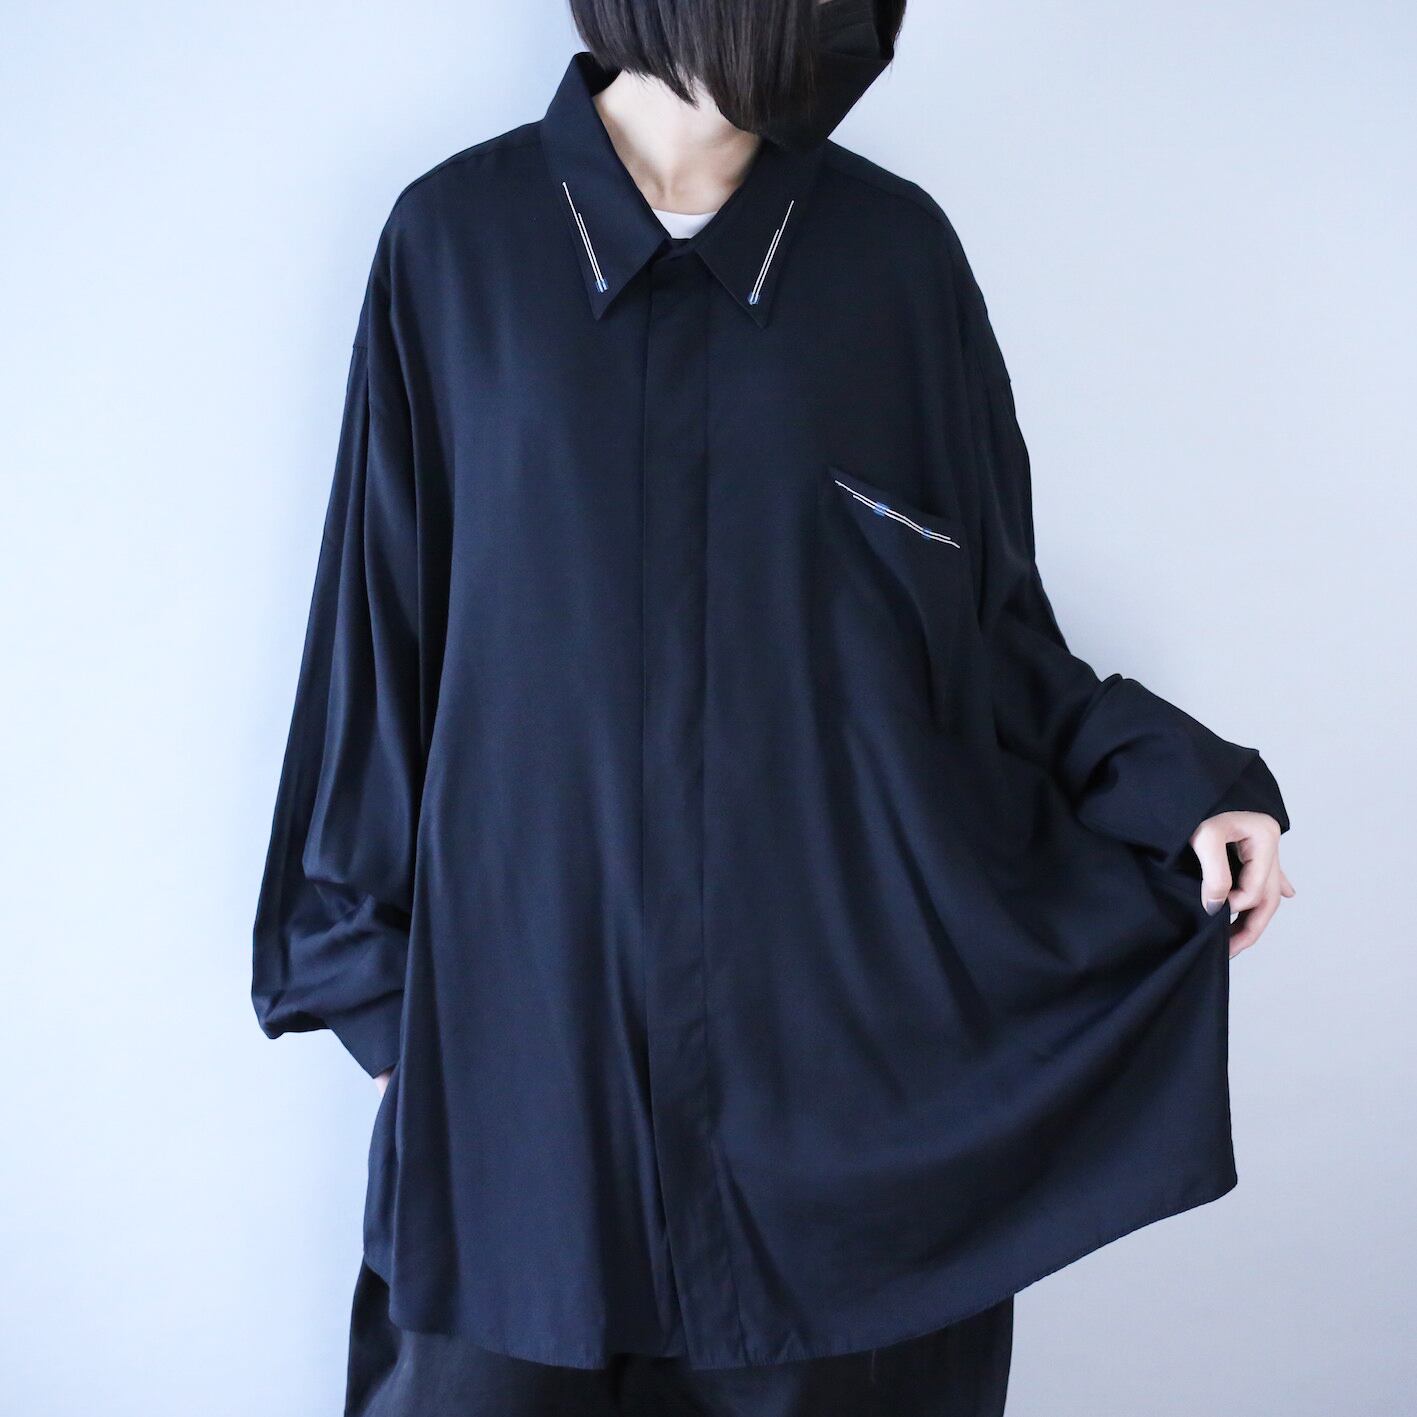 "刺繍" super over silhouette fry-front minimal mode shirt